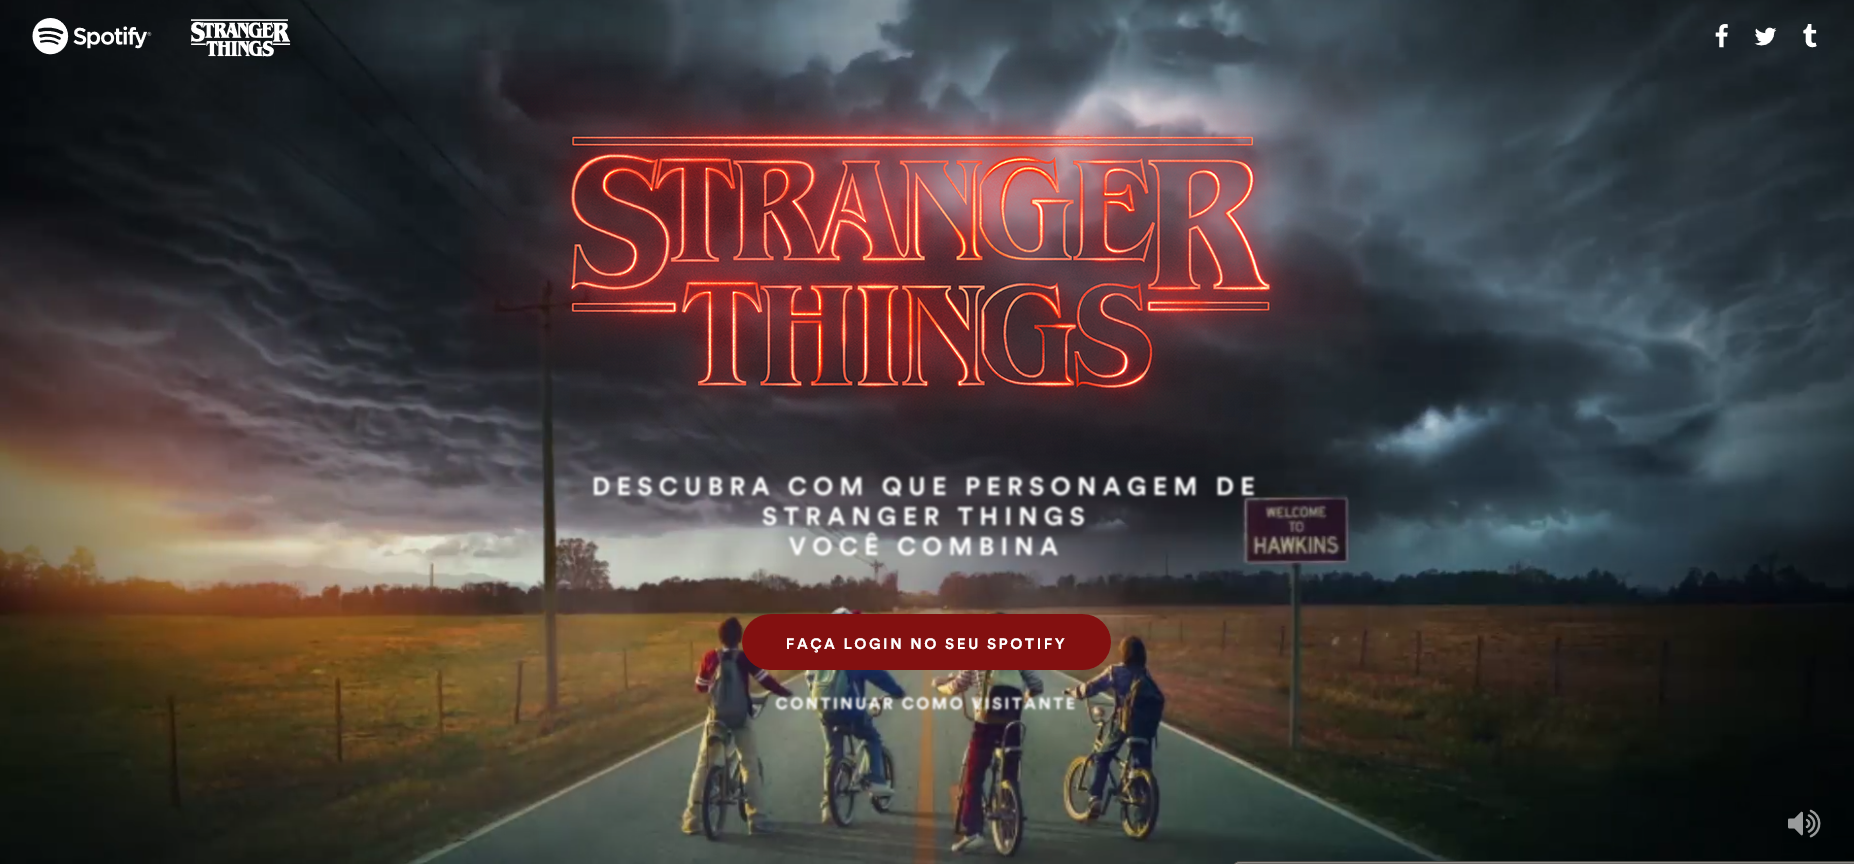 Spotify e Netflix Transportam os Fãs de Stranger Things para o “Mundo Invertido” com Experiência Imersiva